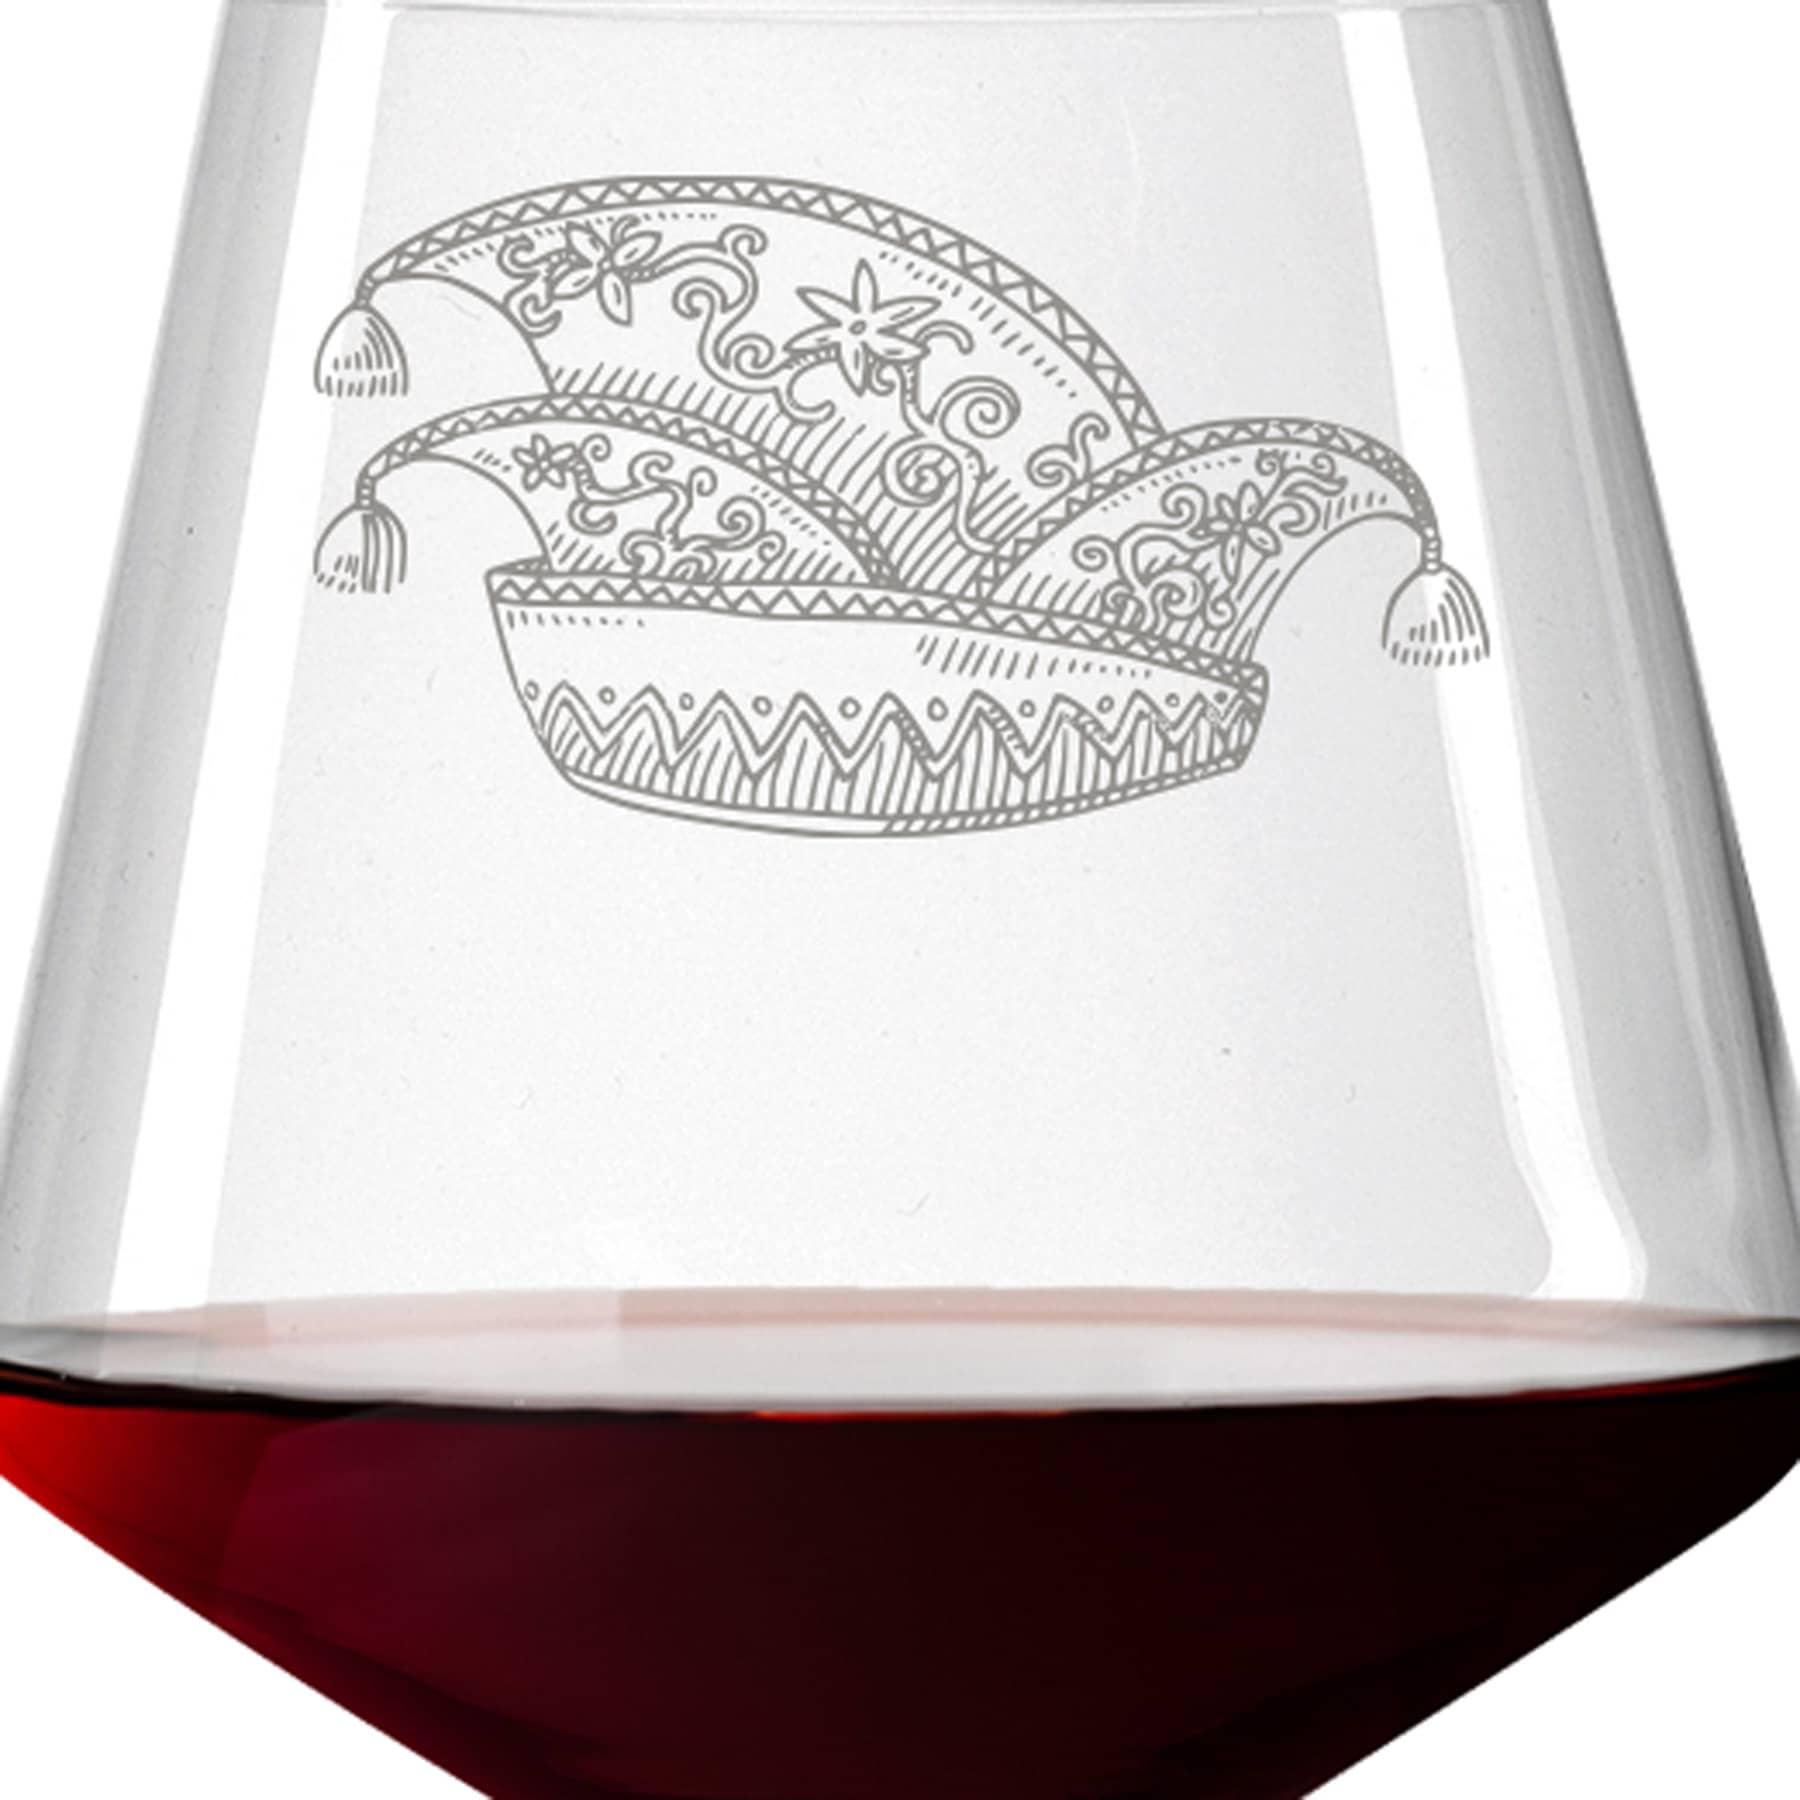 Leonardo Burgunderglas Rotweinglas PUCCINI 730ml mit Namen oder Wunschtext graviert (Karnevalskappe)